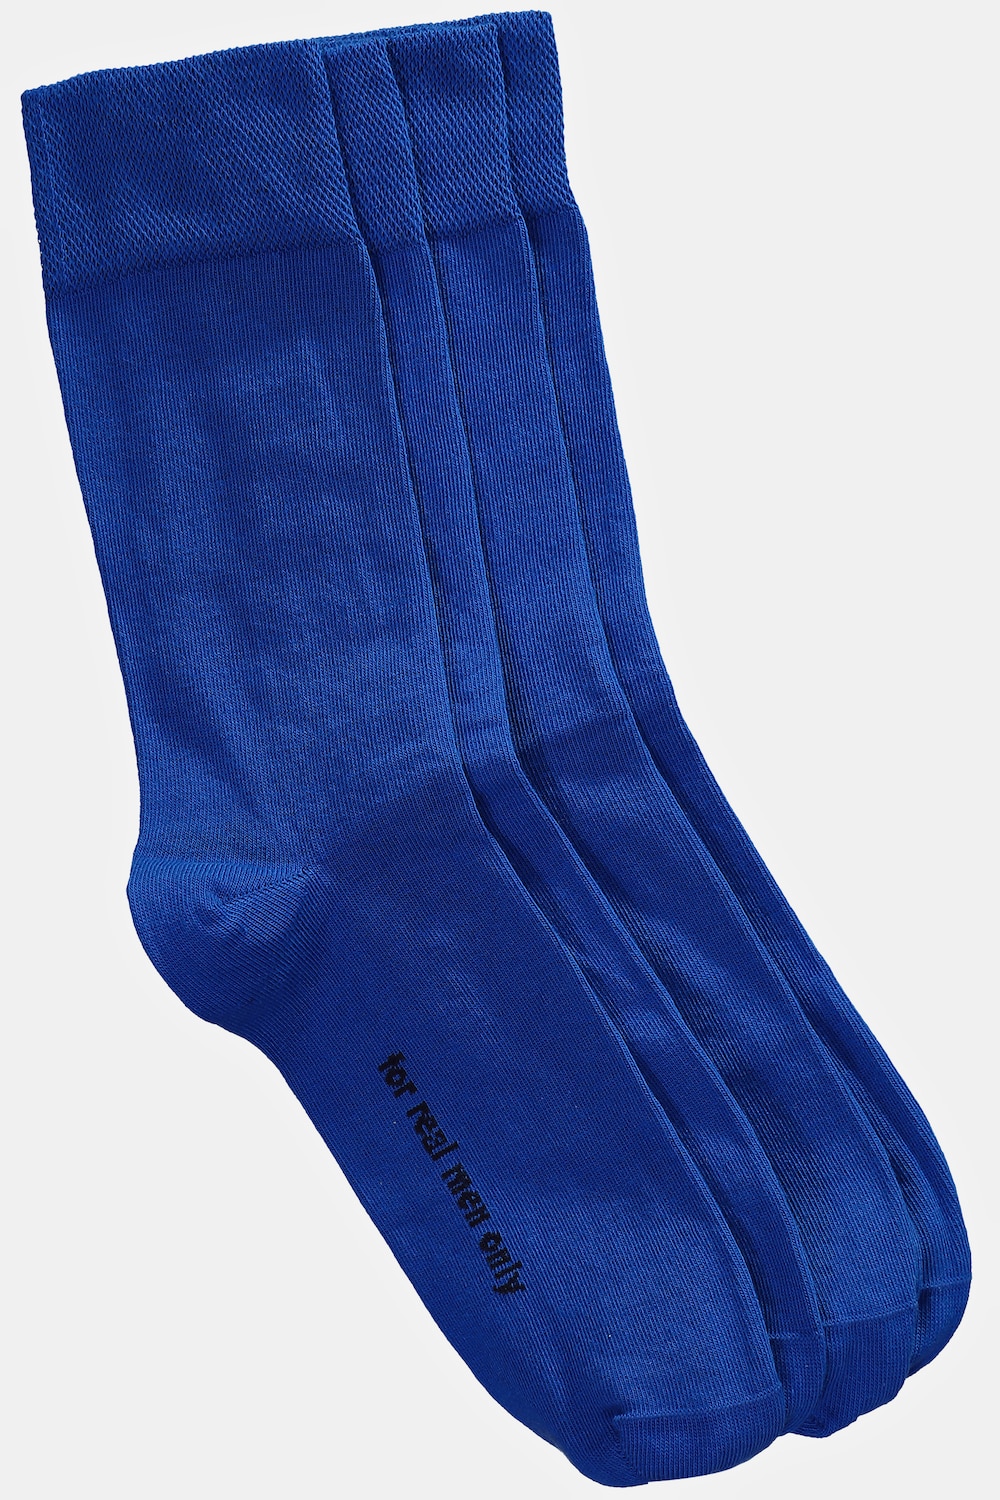 Große Größen Socken, Herren, blau, Größe: 39-42, Baumwolle/Synthetische Fasern, JP1880 von JP1880